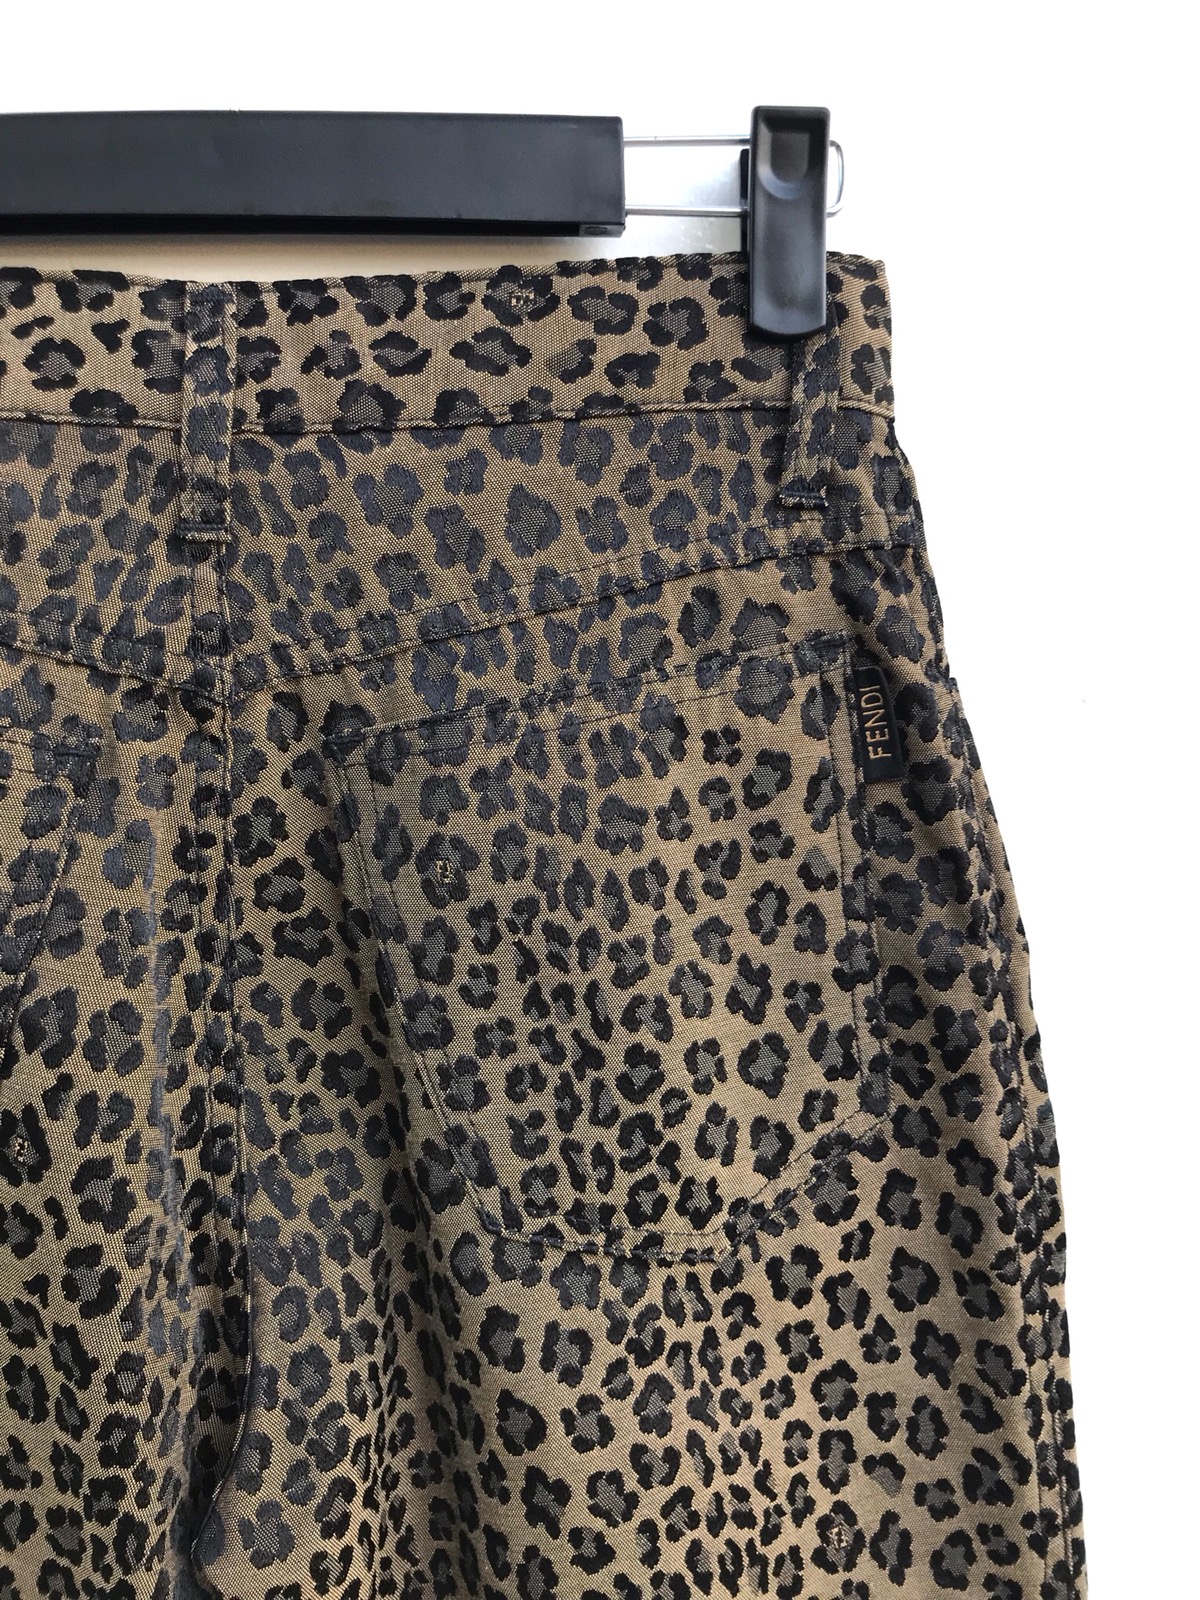 Authentic Fendi Leopard Print Trousers Pants - 5